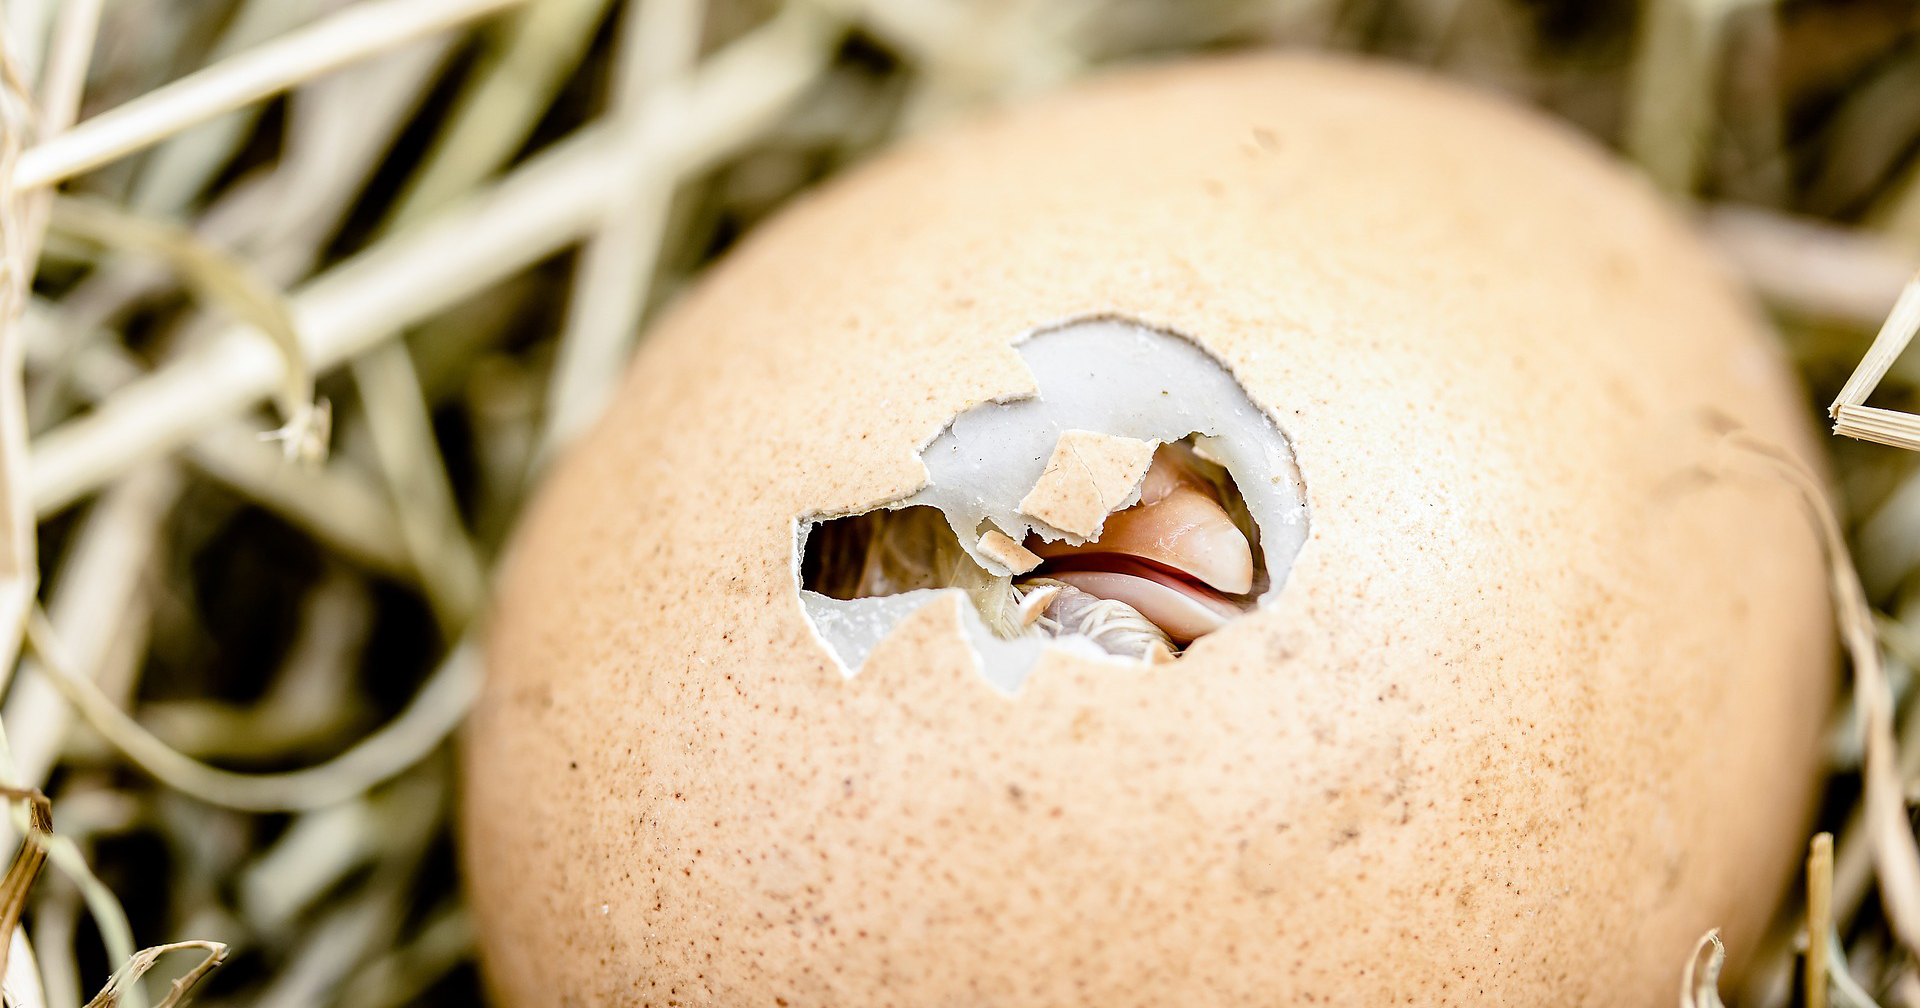 นักวิจัยค้นพบวิธีทำให้ไข่ไก่ไม่ฟักเป็นตัวผู้ หวังลดอัตราการฆ่าไก่ตัวผู้ในอุตสาหกรรม